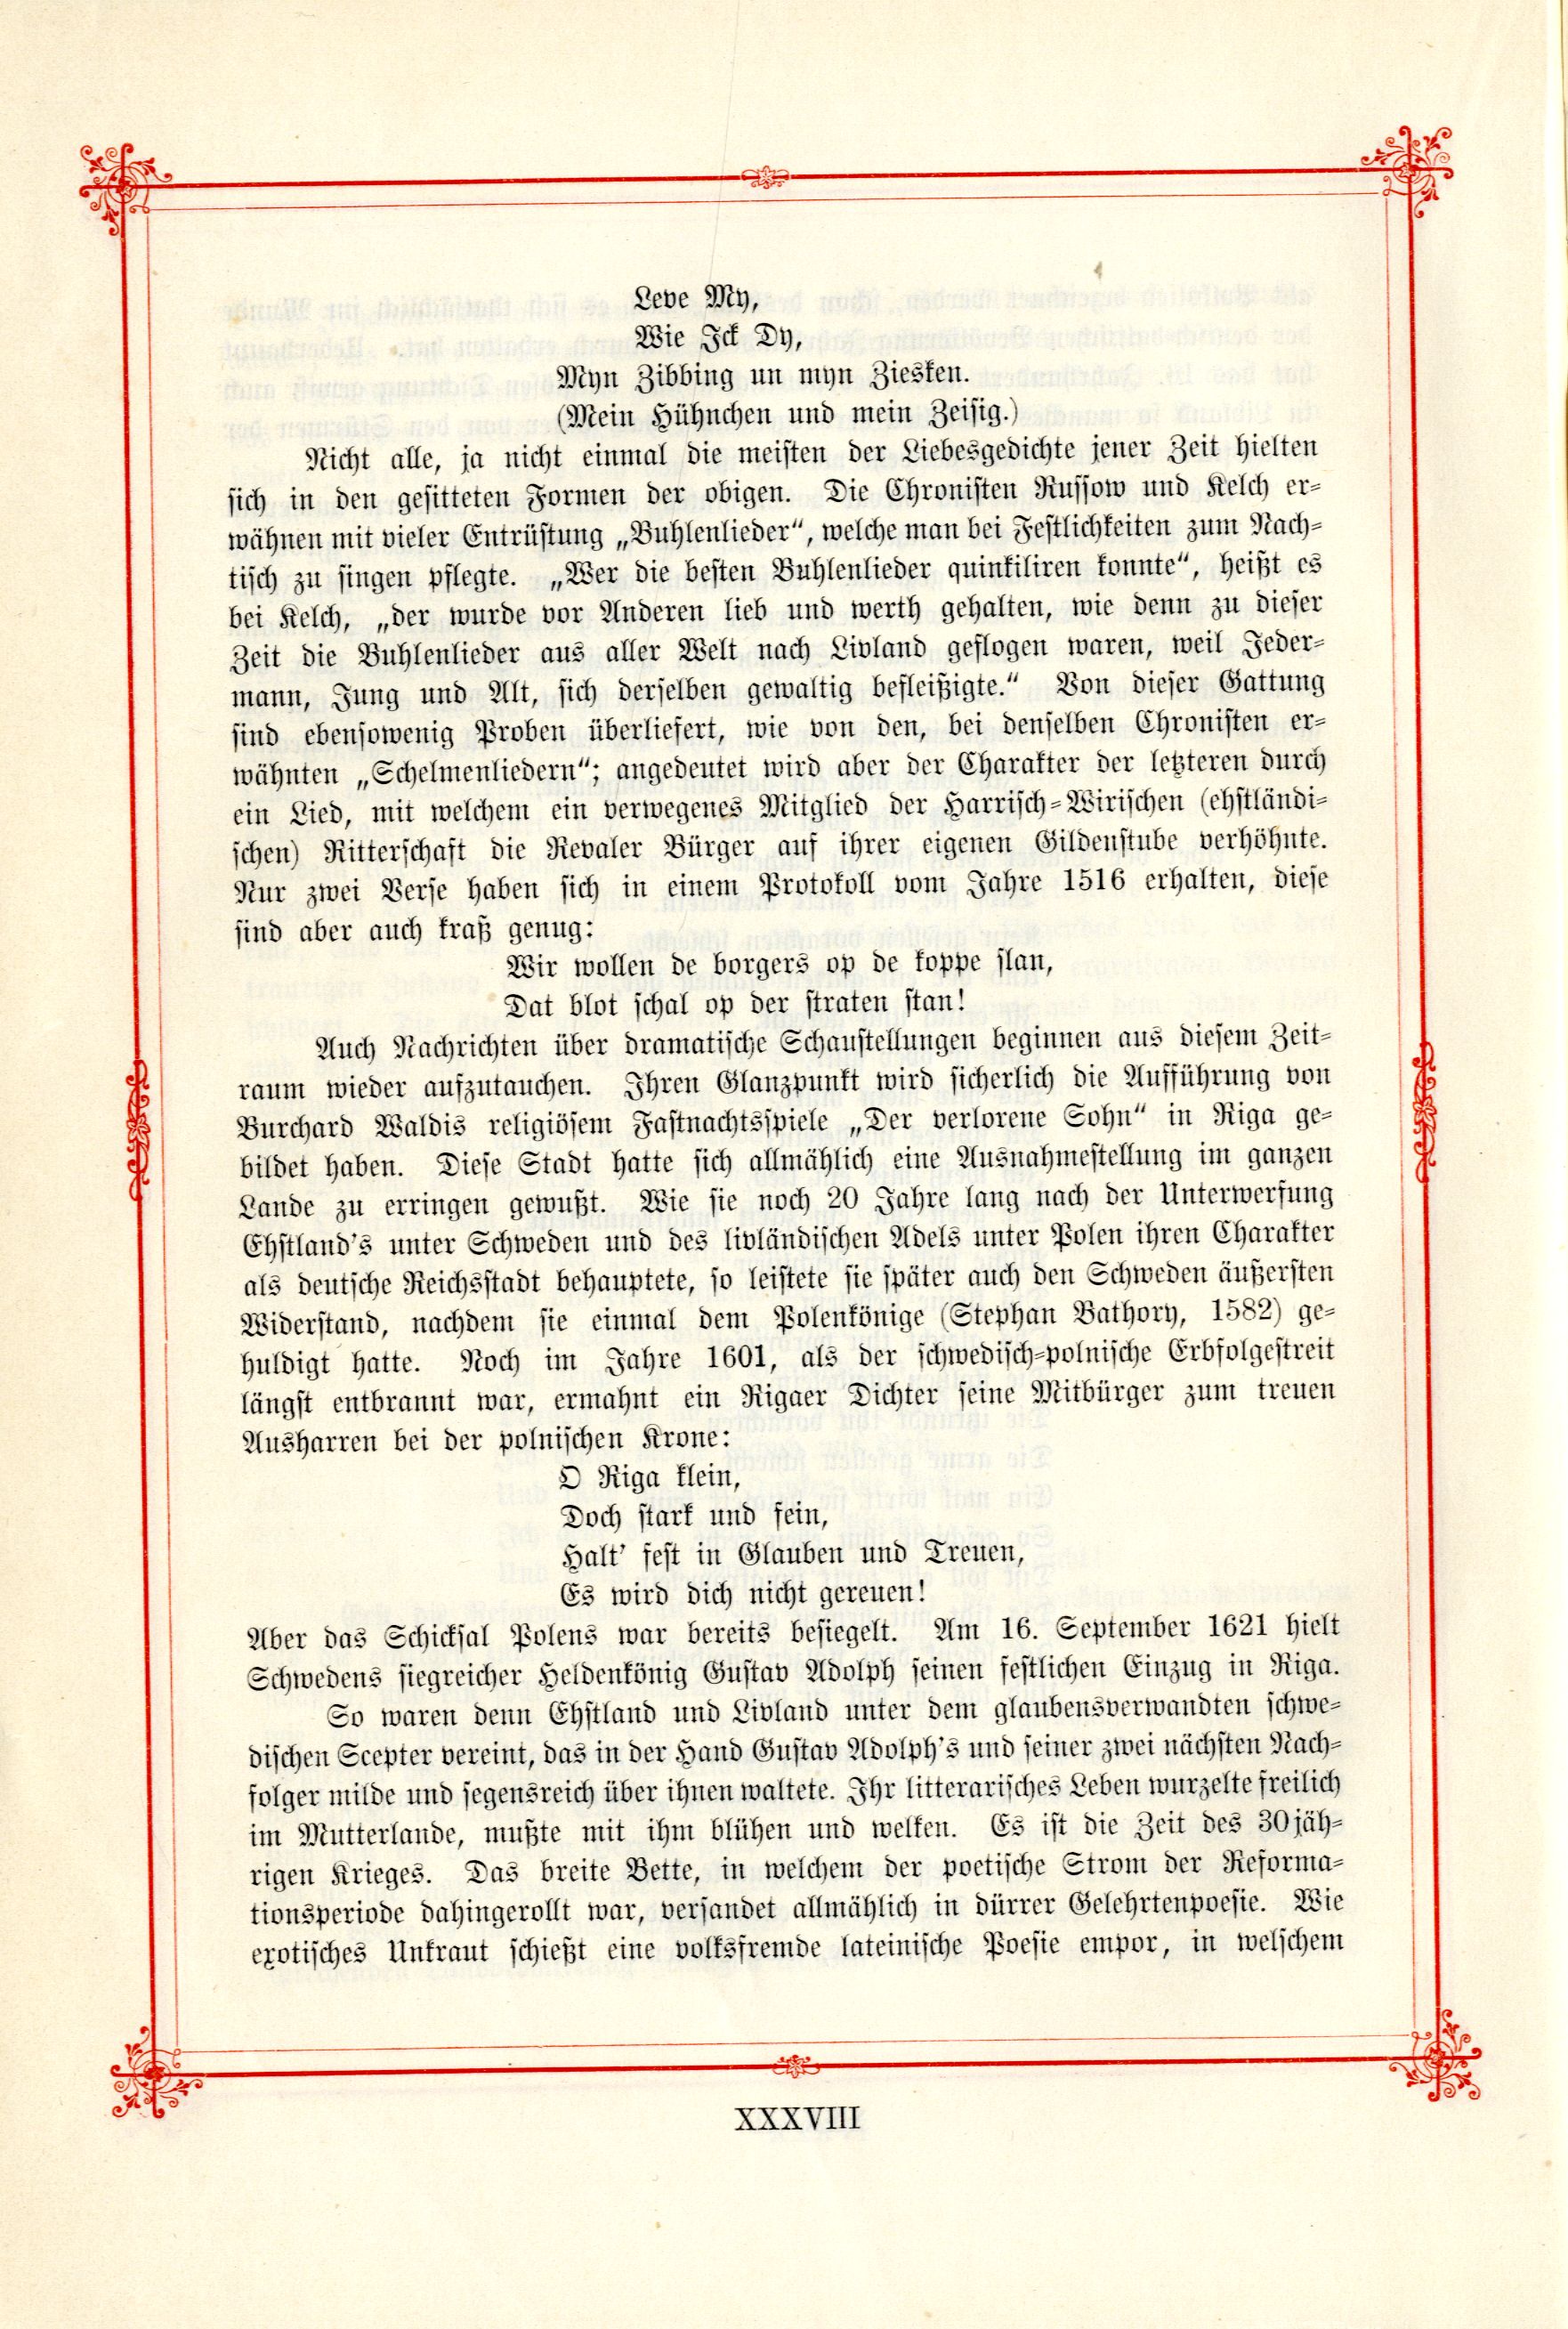 Das Baltische Dichterbuch (1895) | 36. (XXXVIII) Main body of text